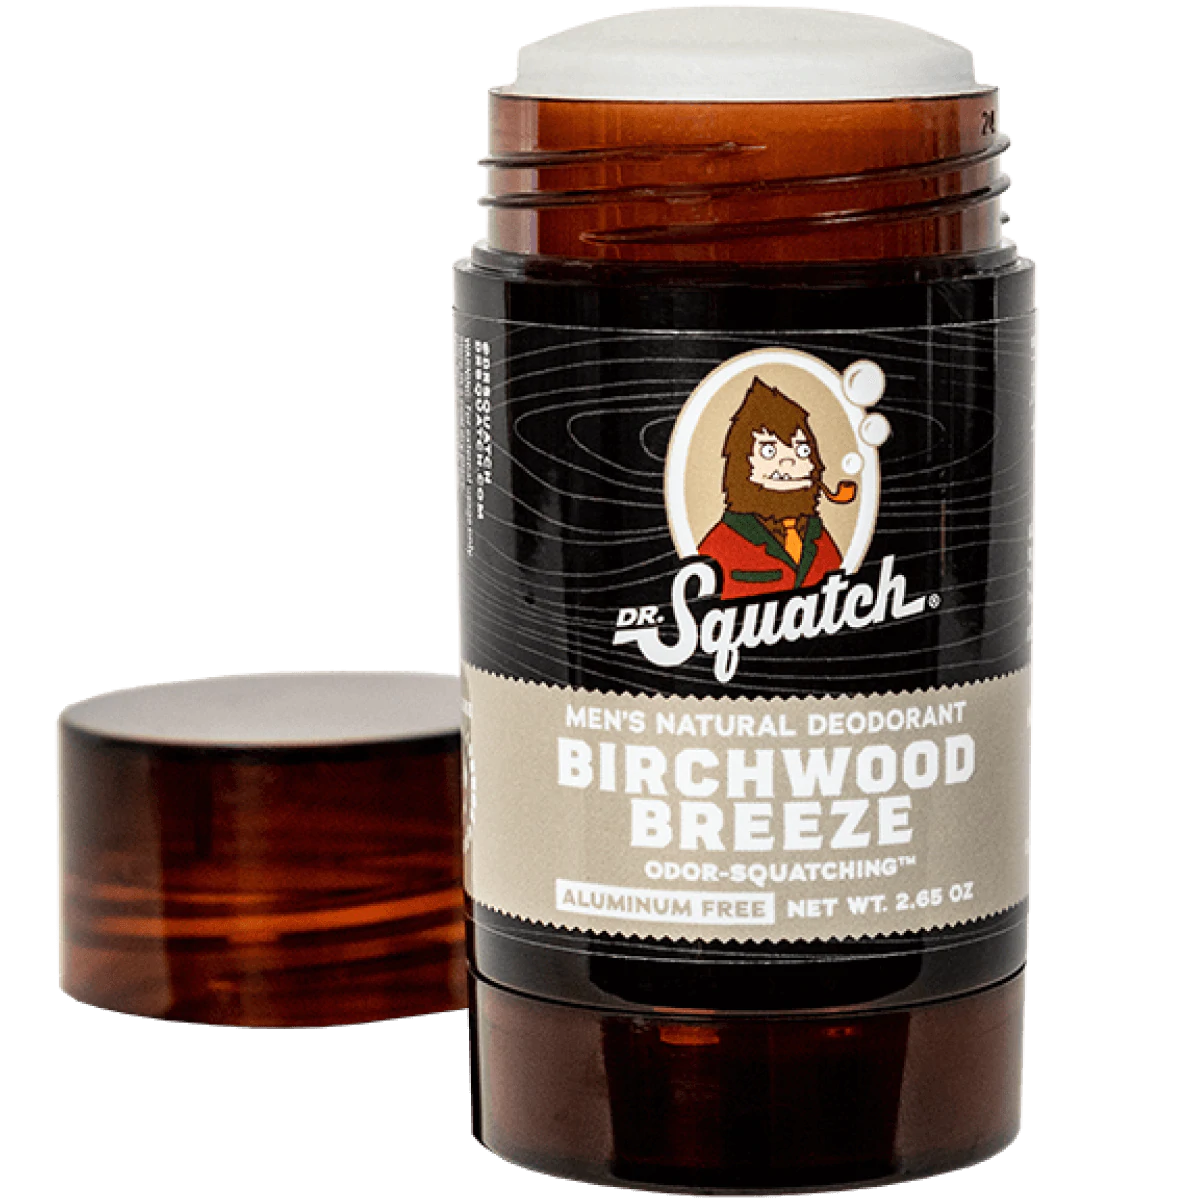 Dr. Squatch Birchwood Breeze Deodorant